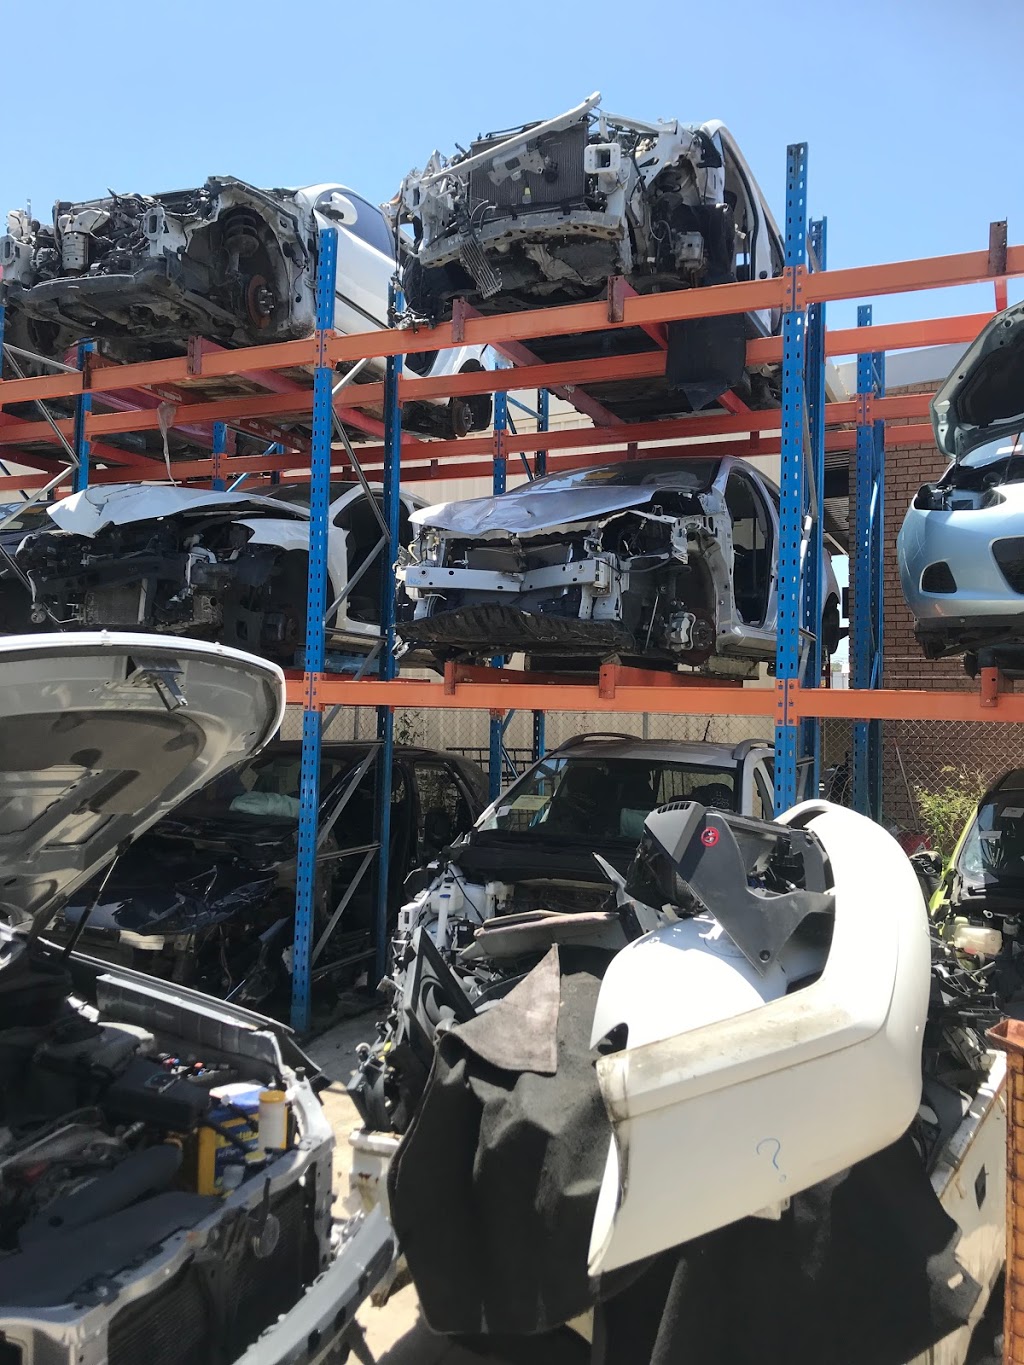 All Tuggerah City Auto Dismantlers | car repair | 115 Gavenlock Rd, Tuggerah NSW 2259, Australia | 0243537670 OR +61 2 4353 7670